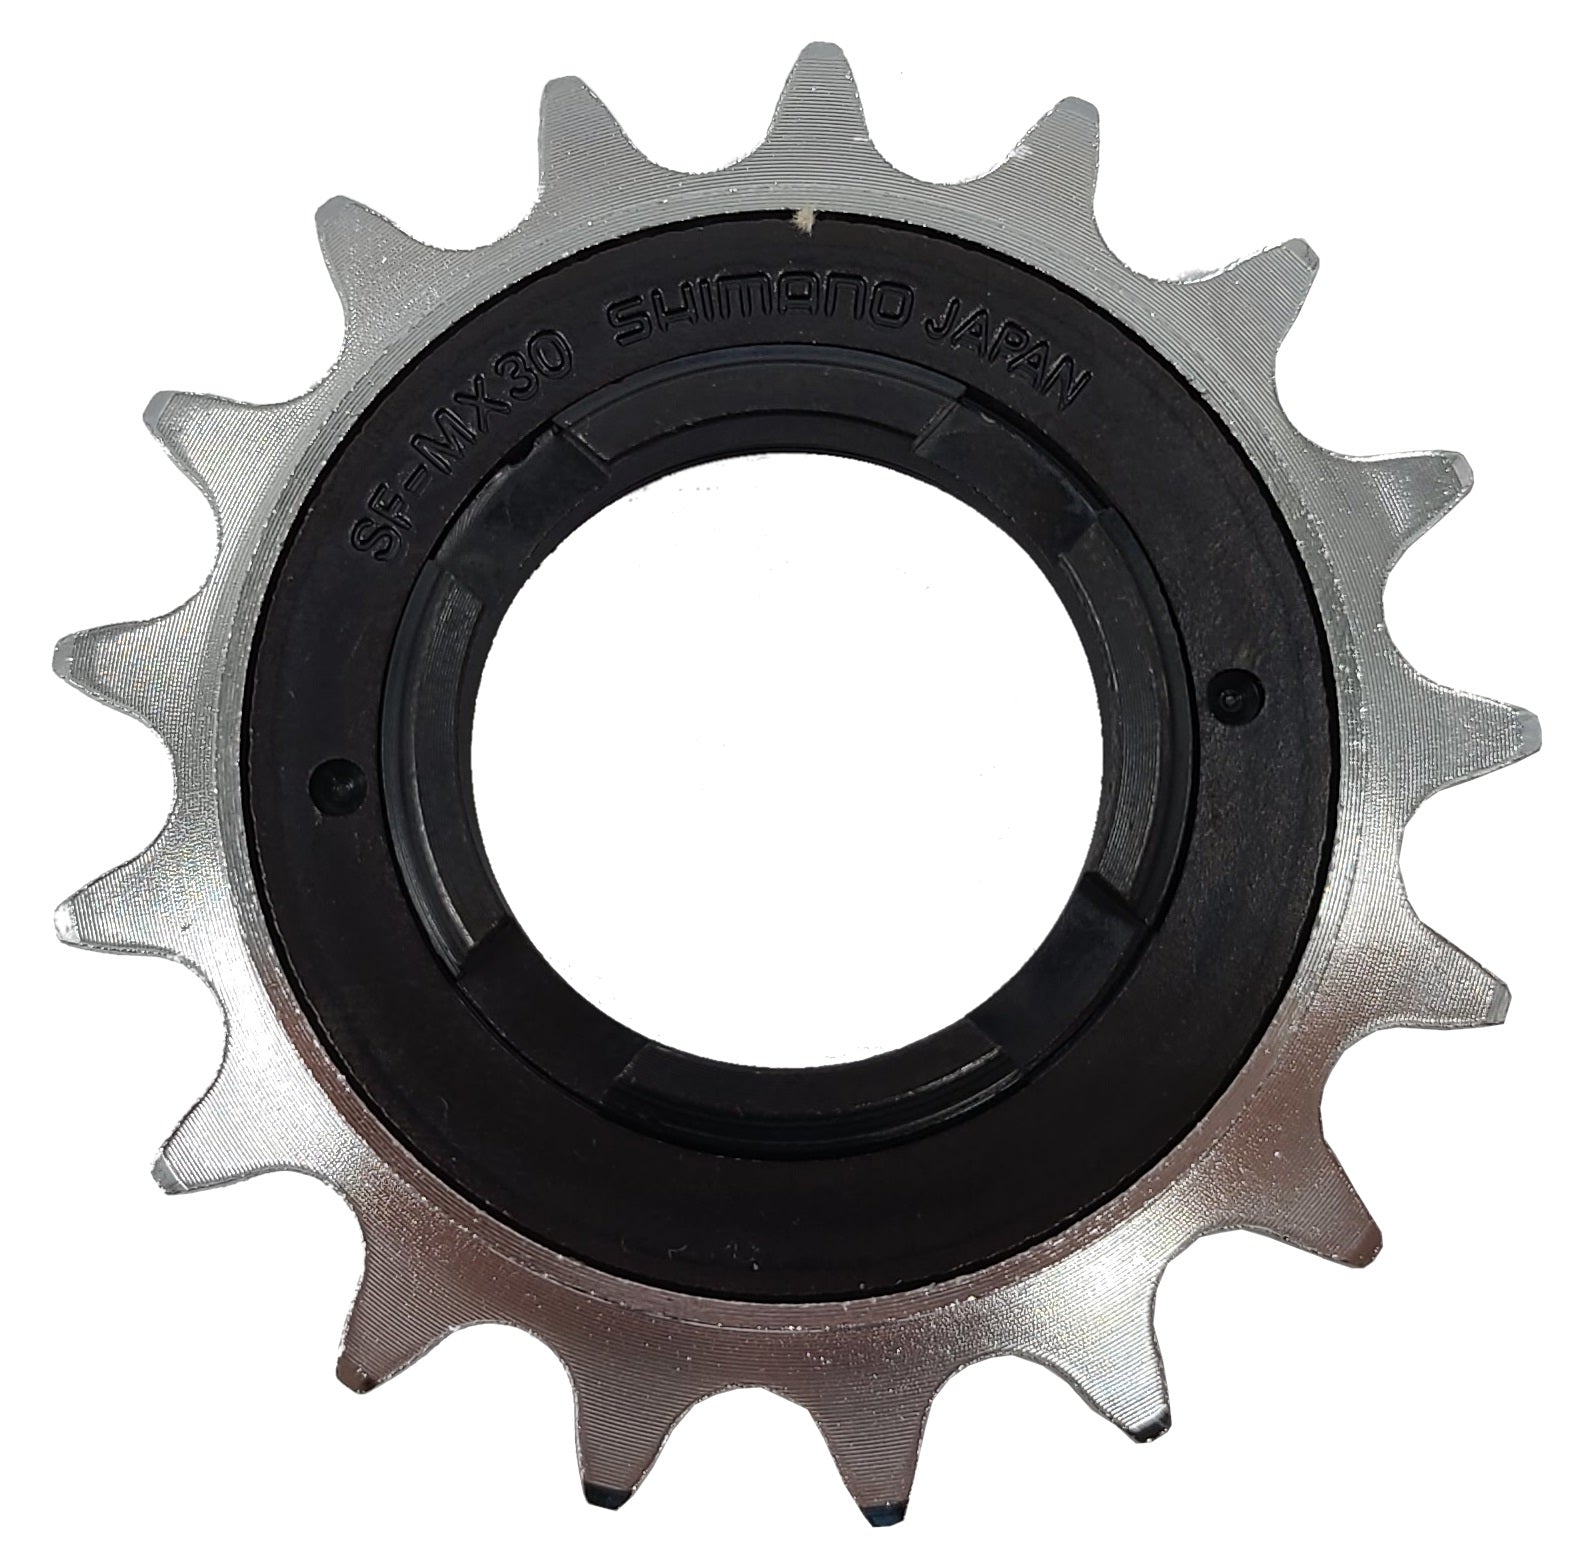 Shimano SF-MX30 Chrome 3/32" Freewheel - The Bikesmiths